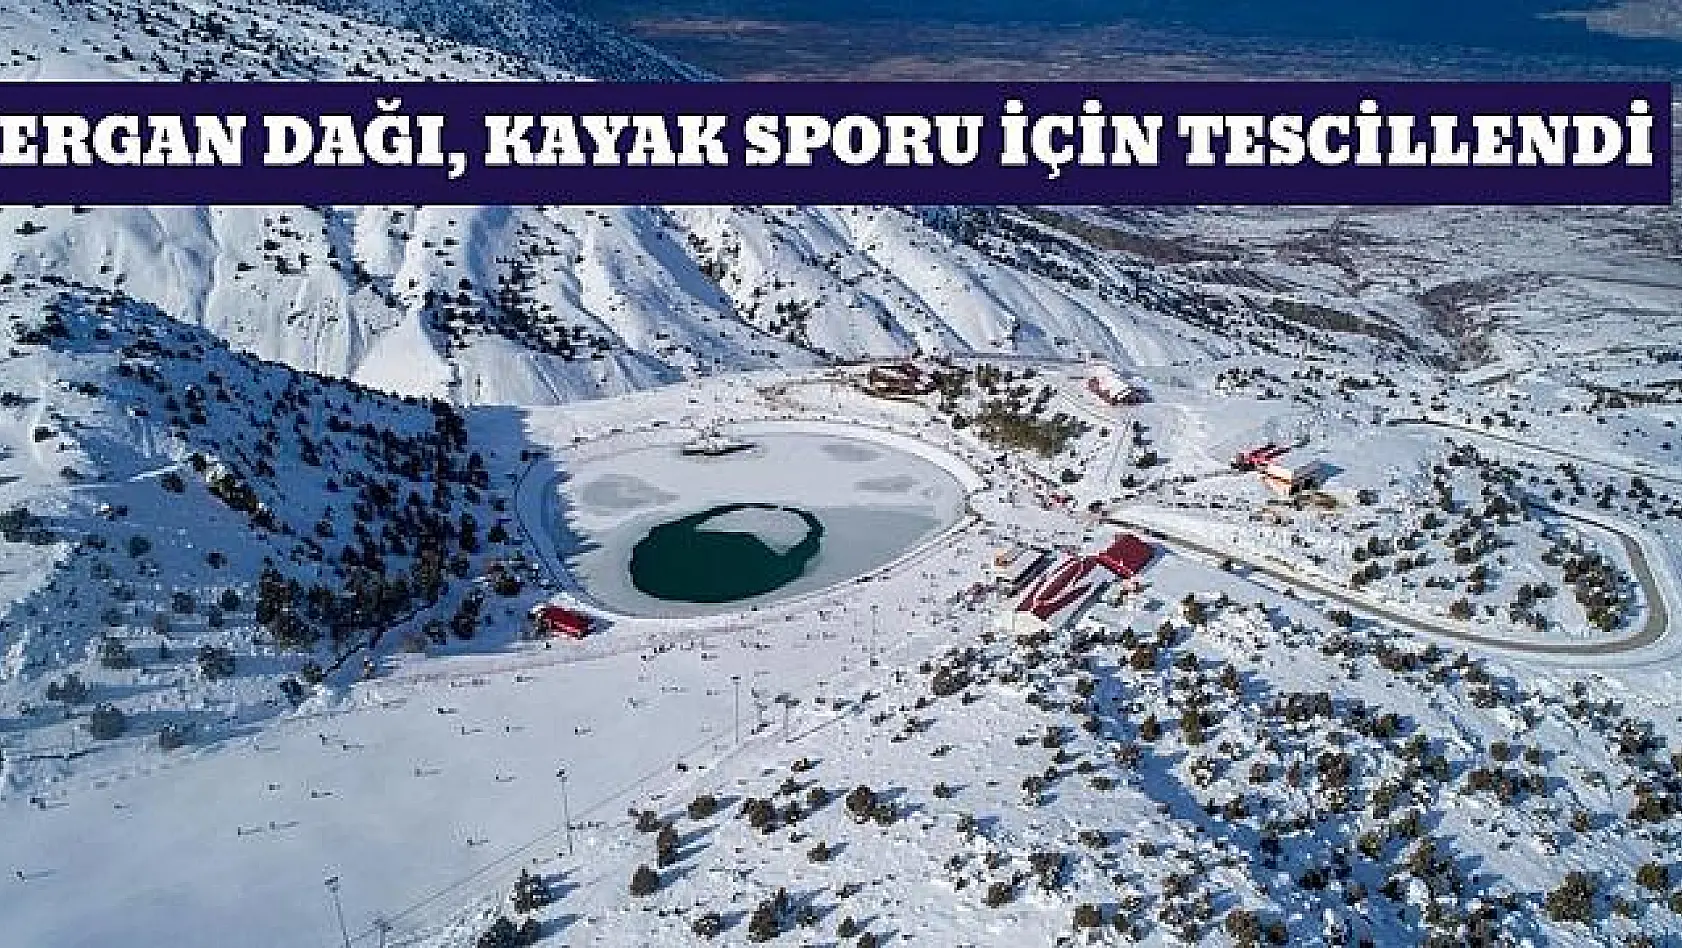 Ergan Dağı Milli Takım kamplarına ev sahipliği yapacak  